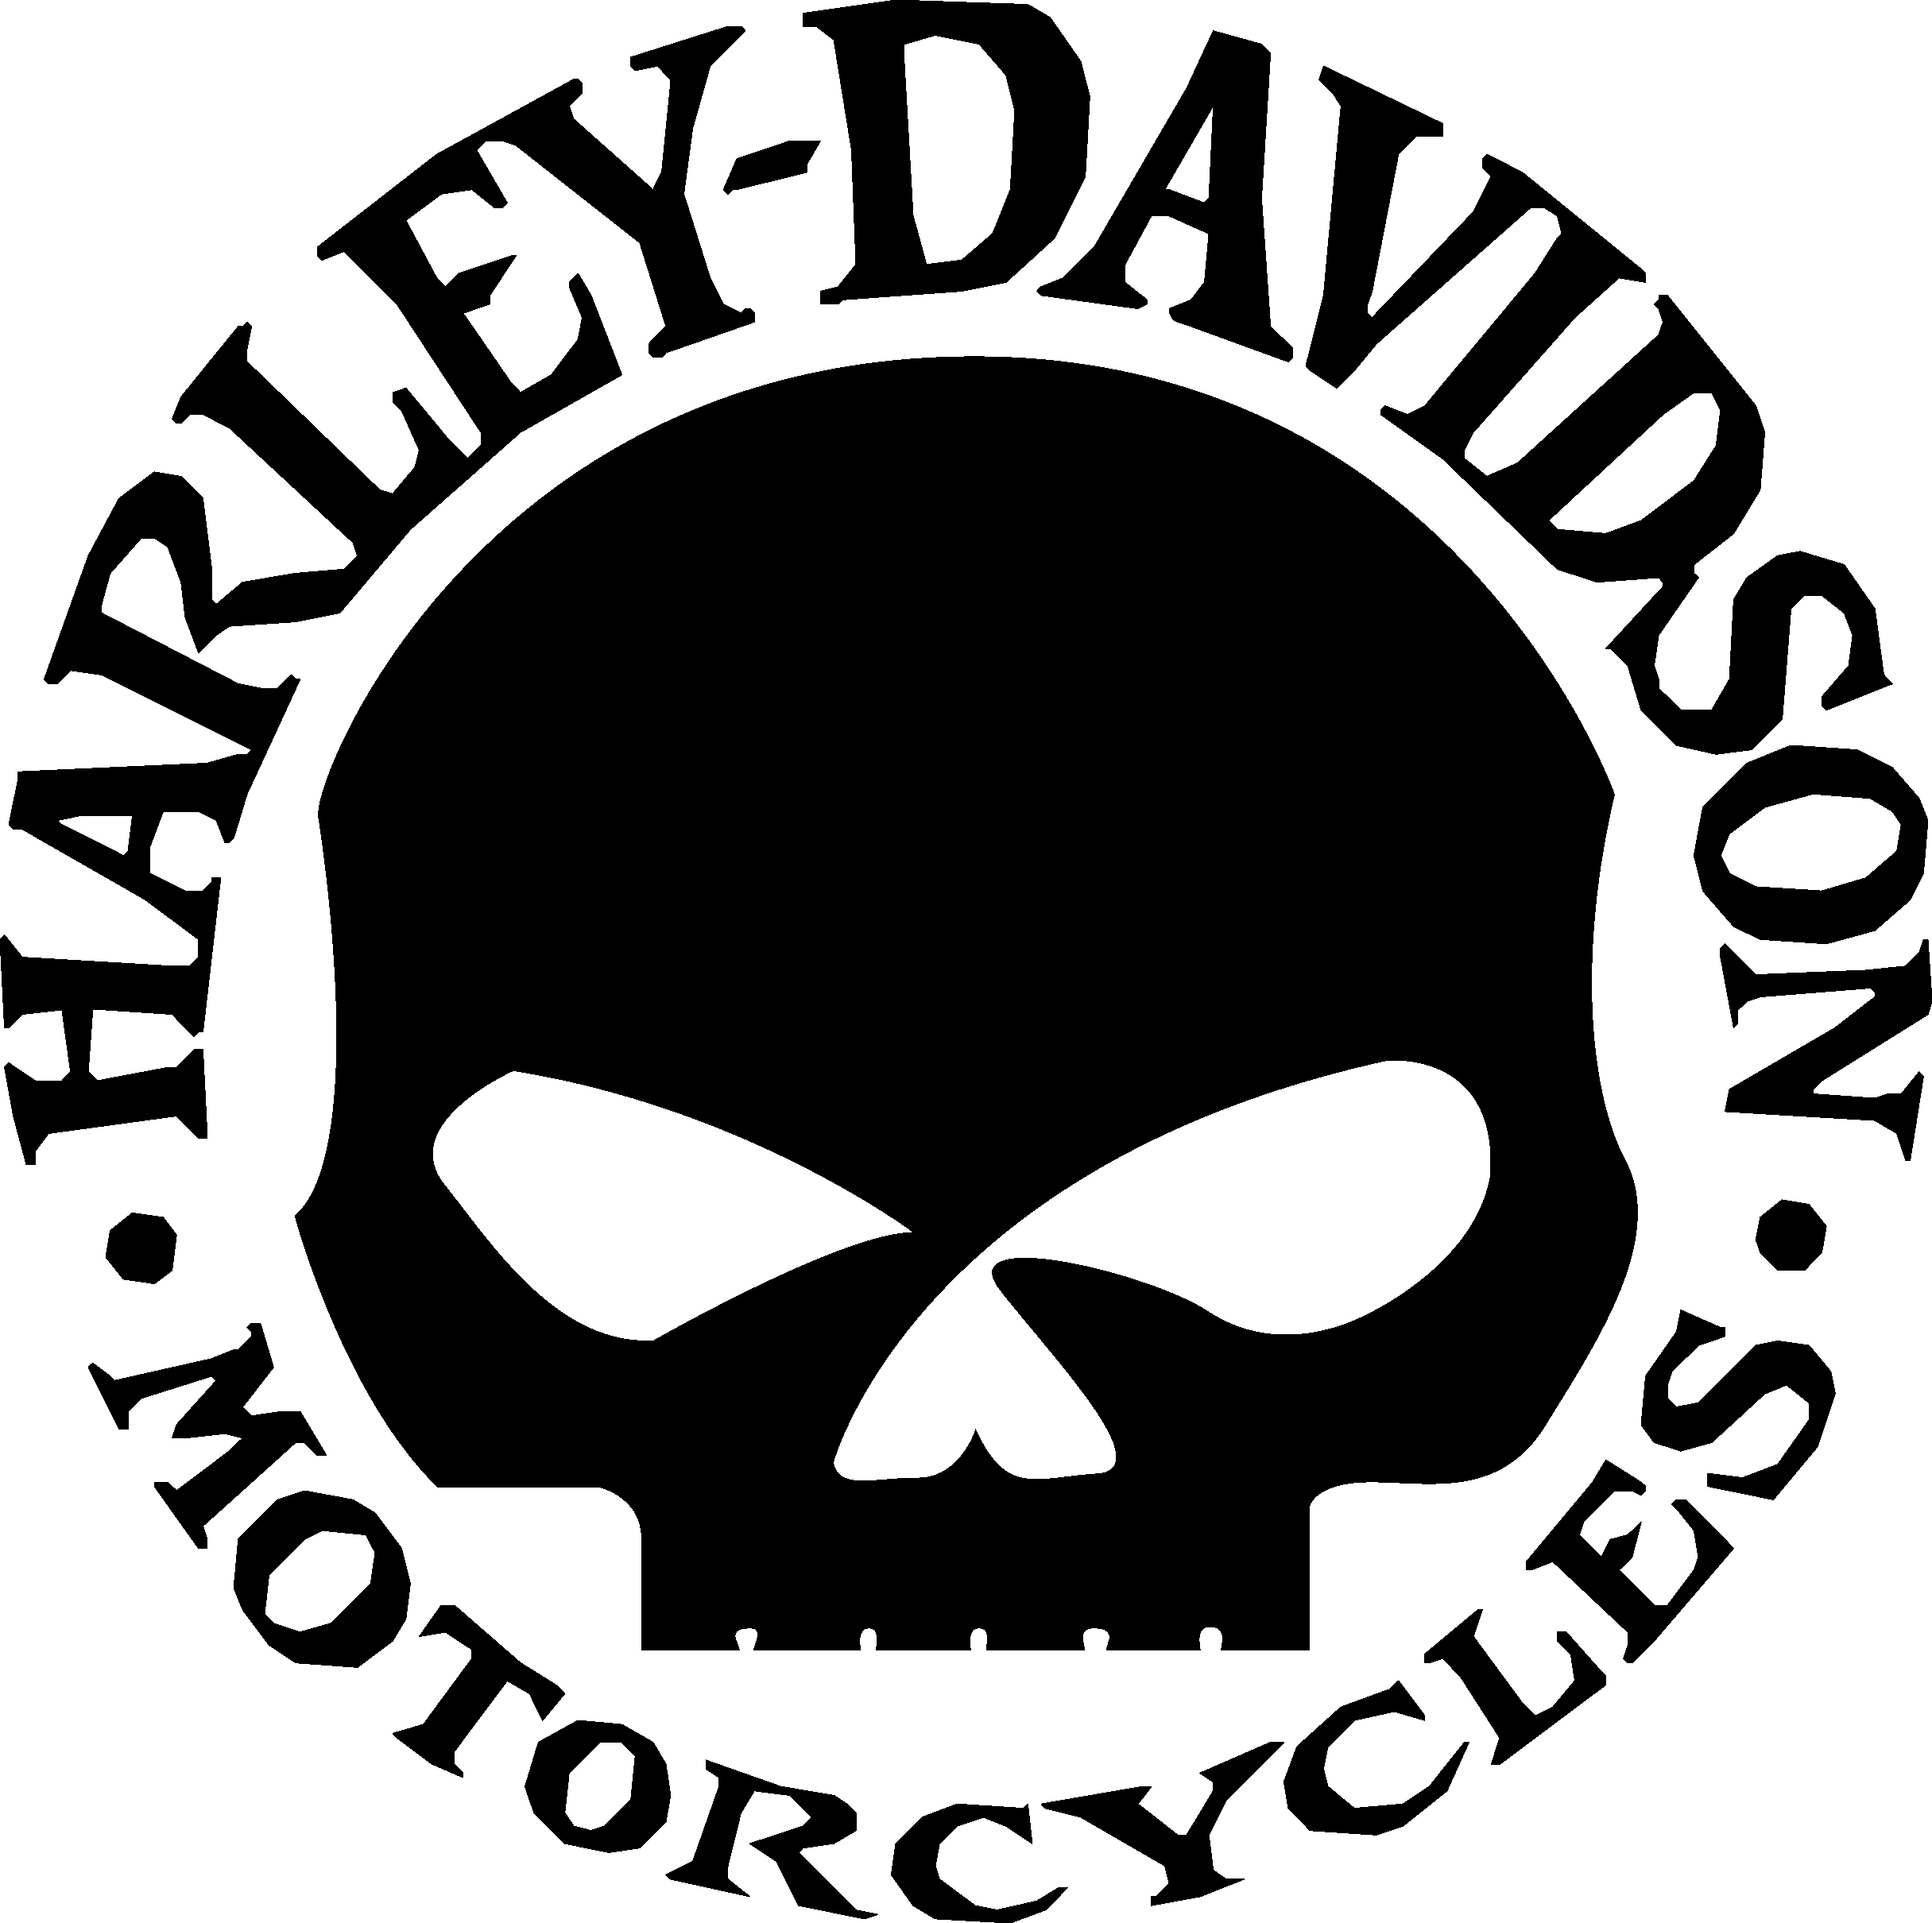 Harley-Davidson Skull Logo - Willie G Skull logo. WILLIE G SKULLS. Harley davidson, Harley